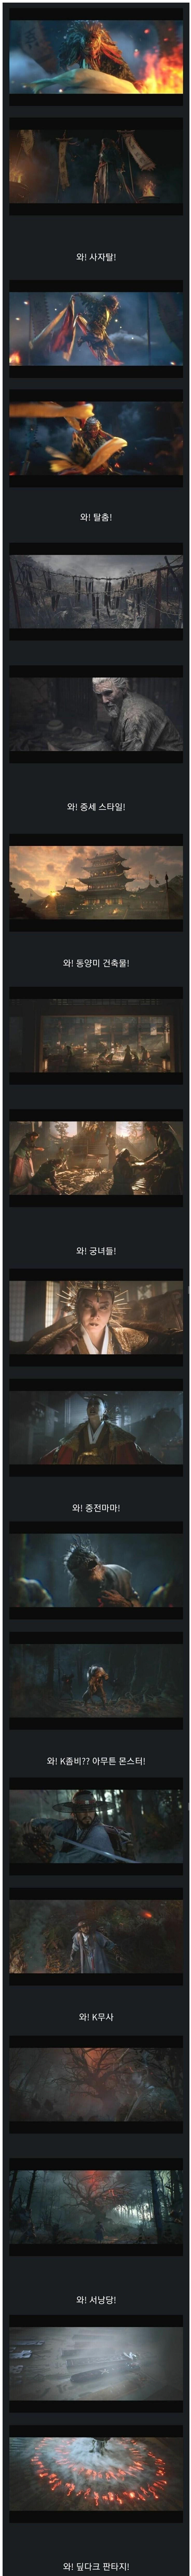 썸네일-한국형 초대형 판타지 게임 티저-이미지